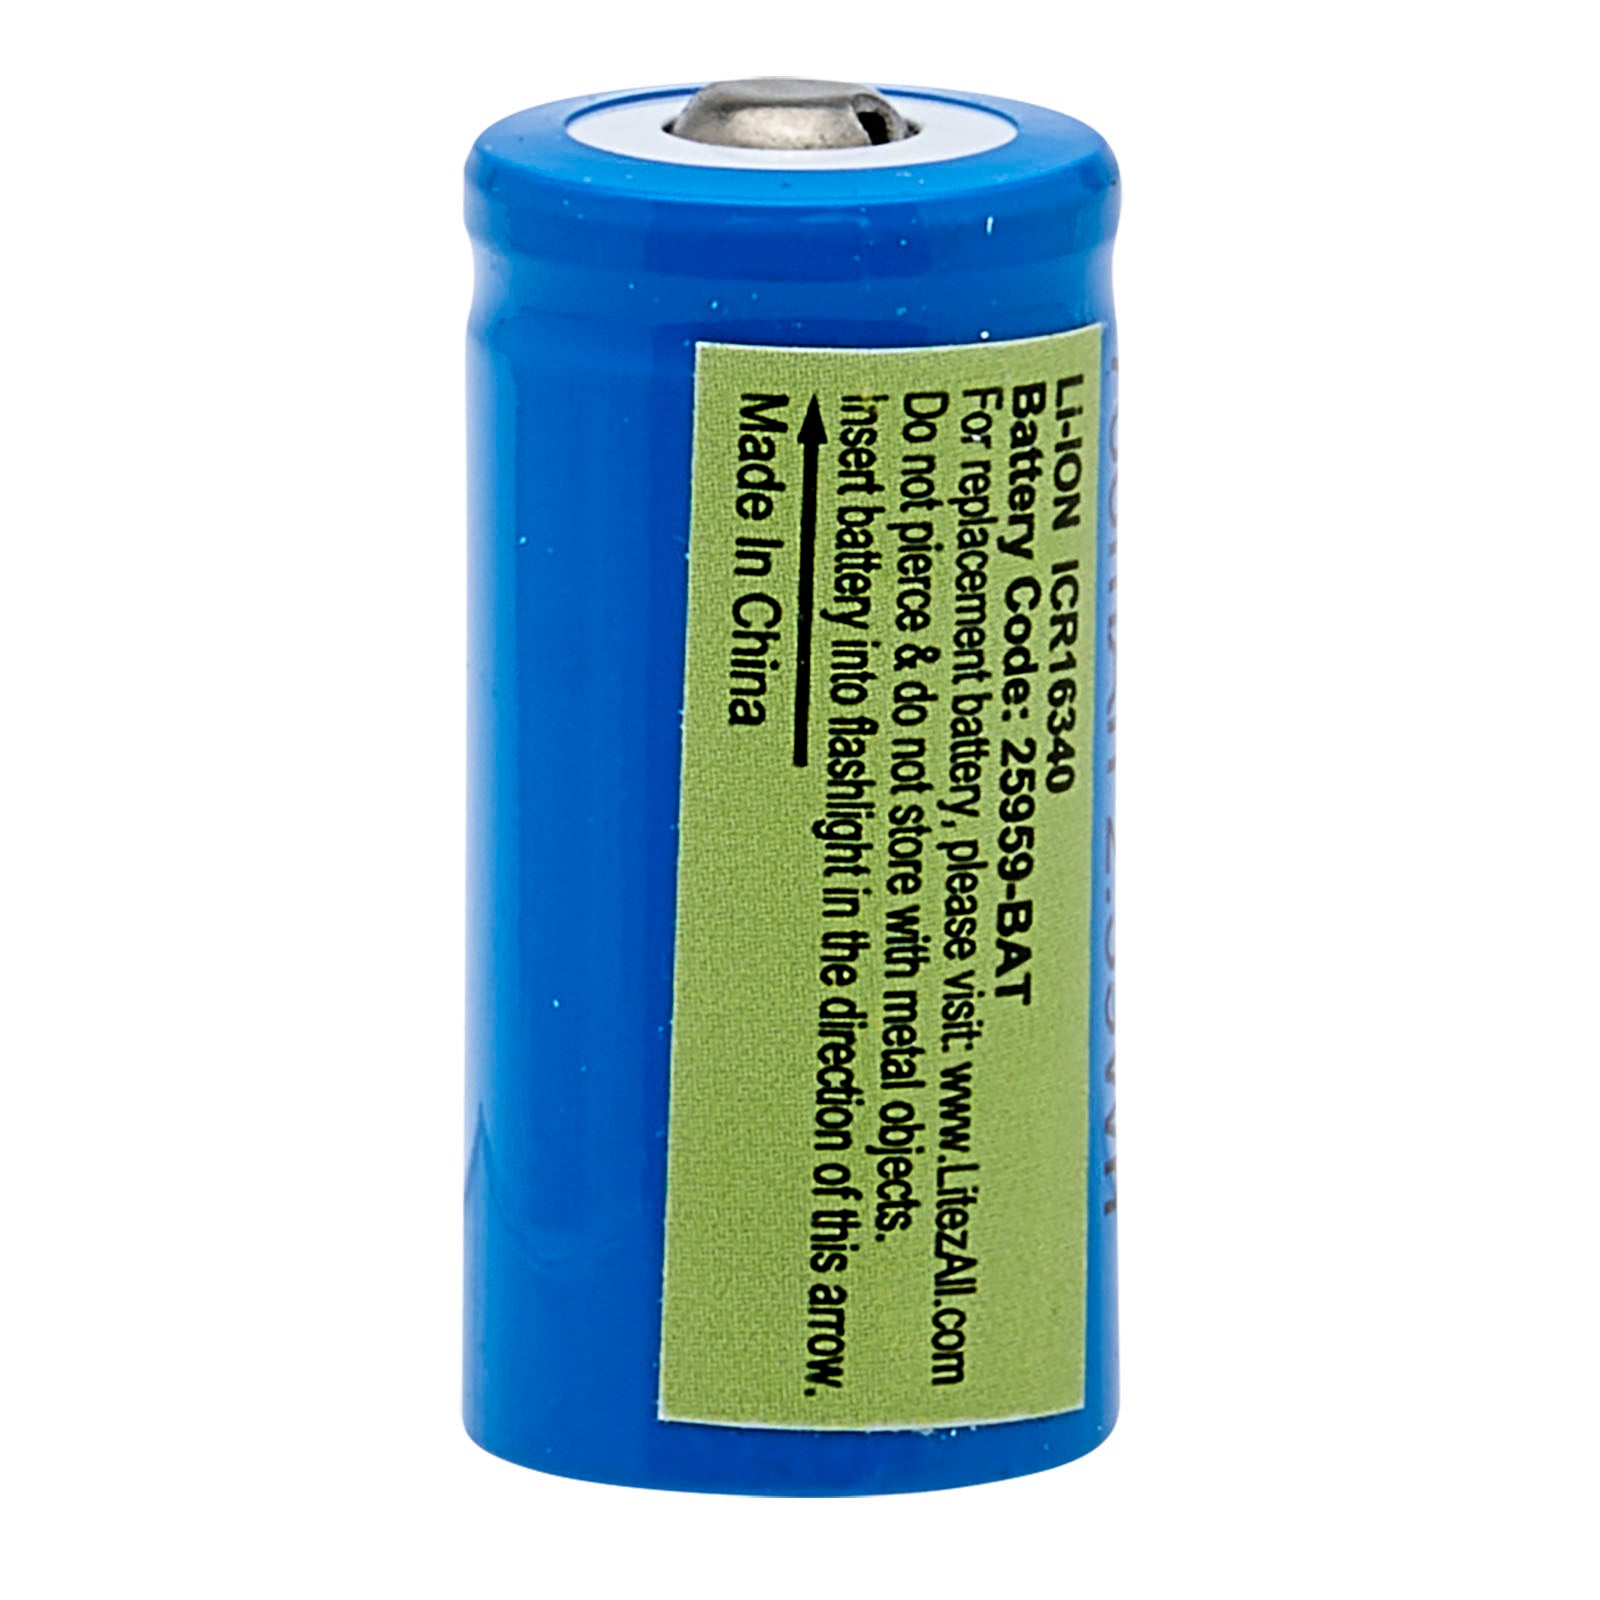 Replacement Battery for 25959 - K-KUB-6 Kodiak KUB